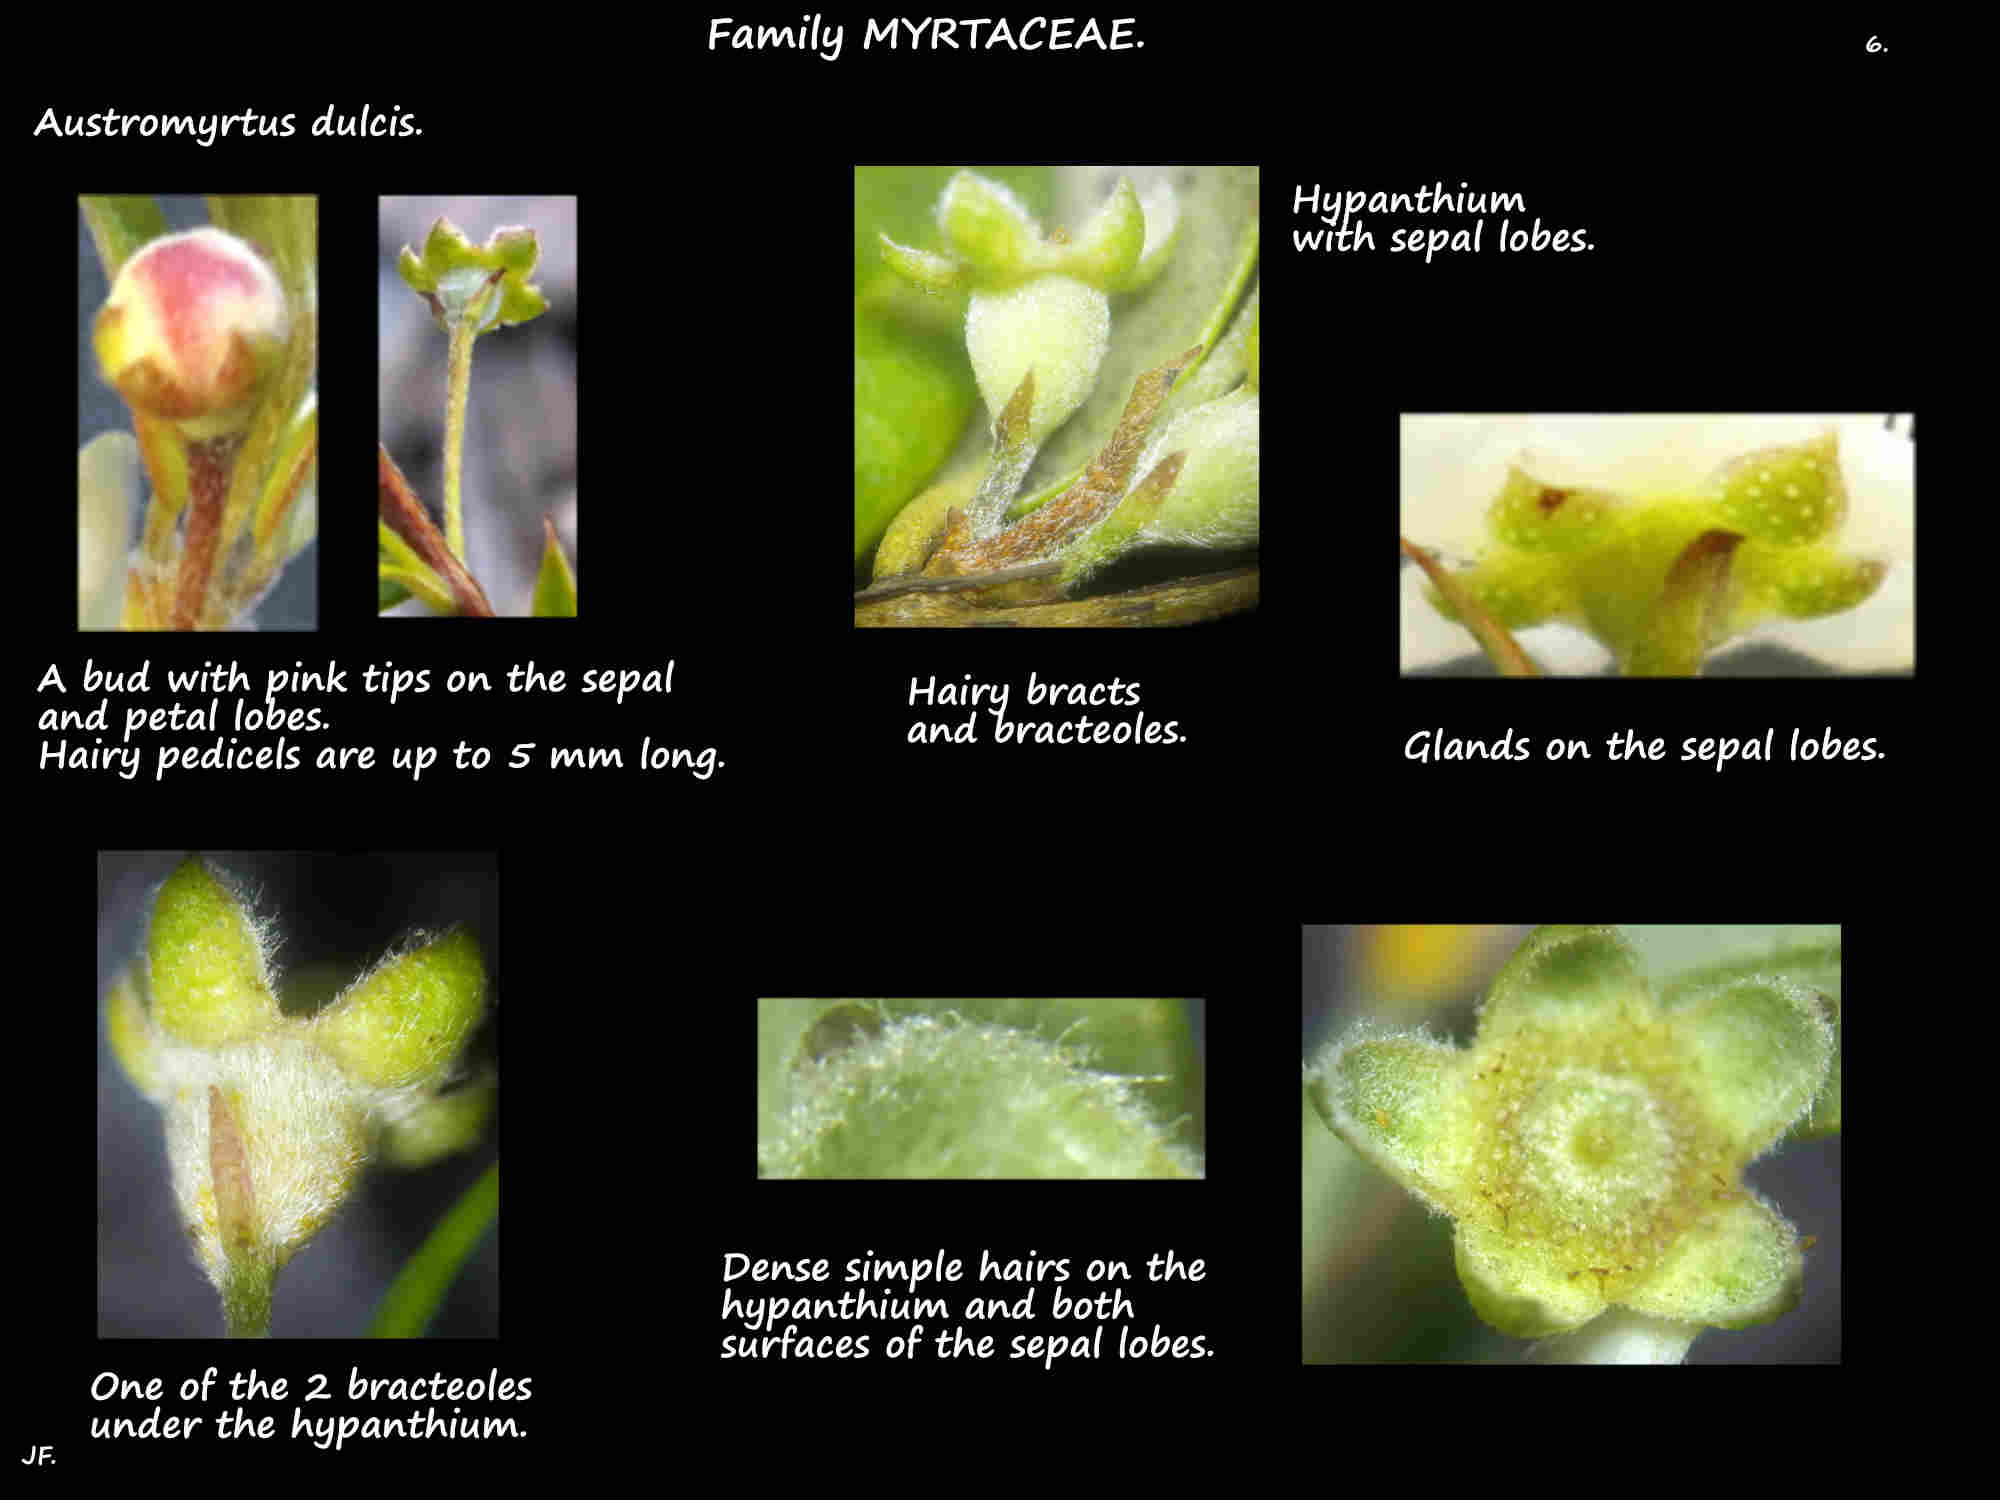 6 Austromyrtus dulcis hypanthium & sepal lobes